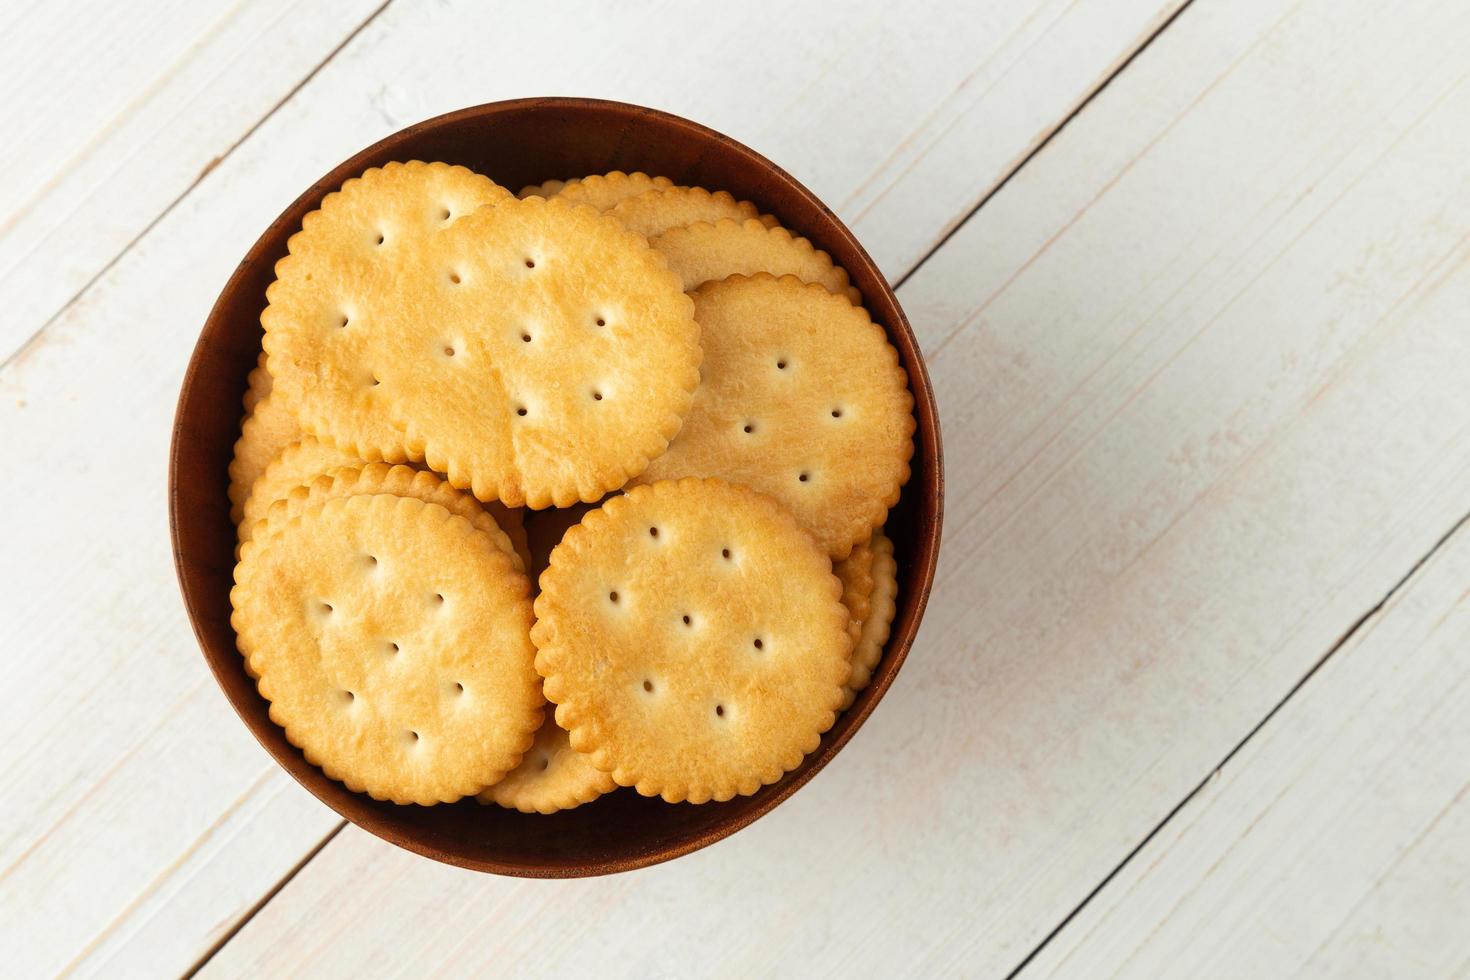 biscuits craquelins arrondis dans un bol en bois sur une table en bois blanc photo